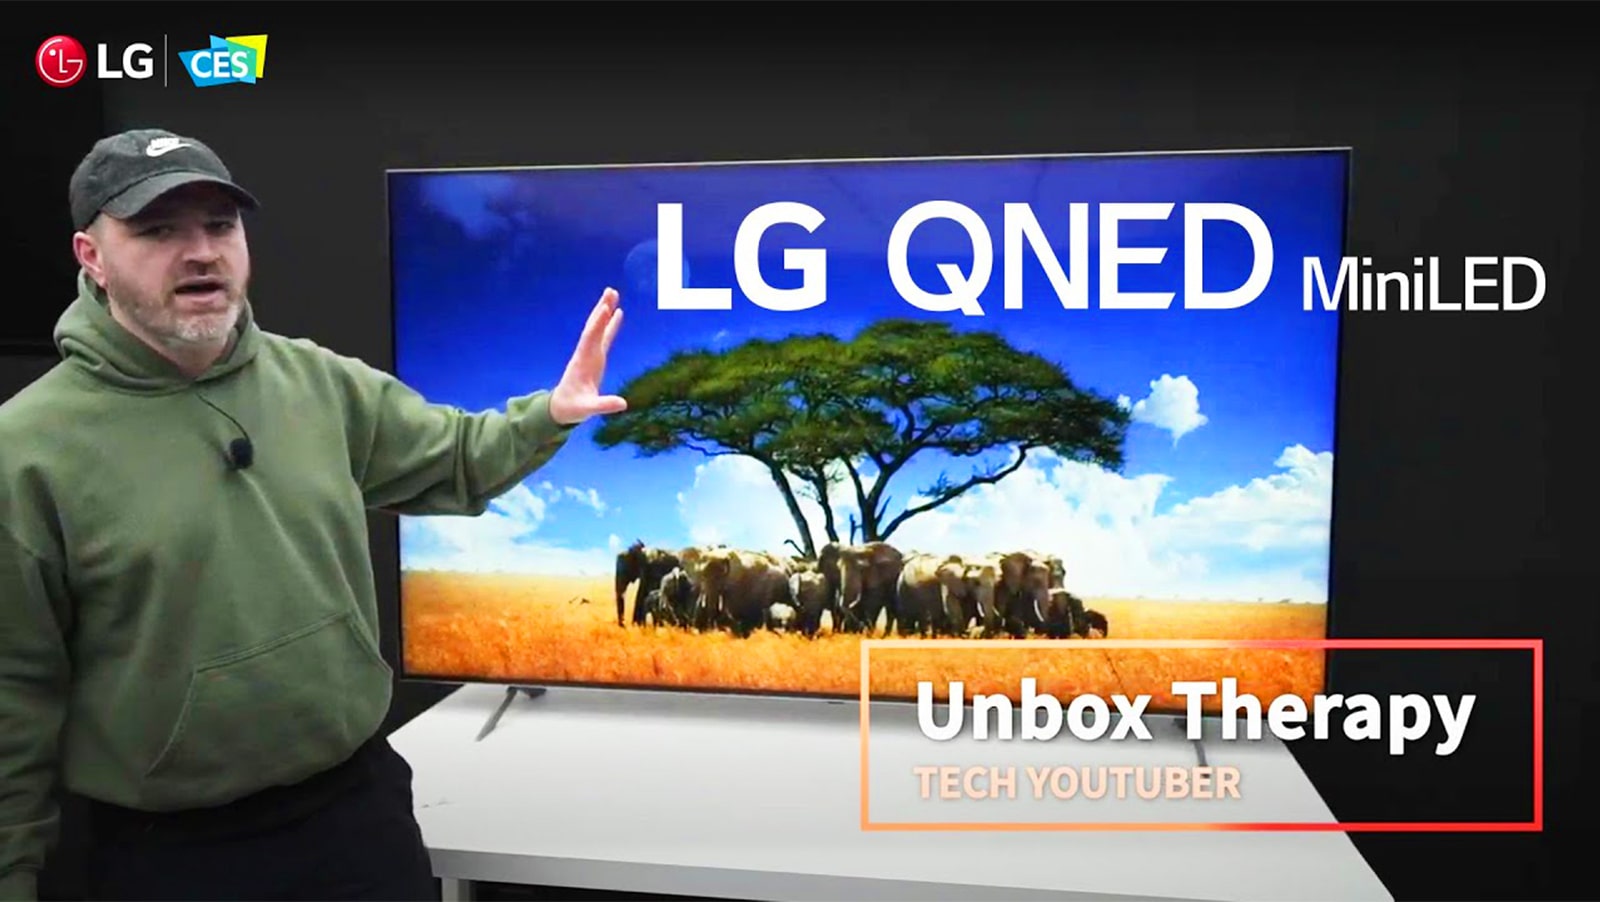 يقف Tech YouTuber Unbox Therapy أمام تلفزيون  QNED MiniLED من إل جي. يظهر على الشاشة صورة لقطيع من الأفيال حول إحدى الأشجار.